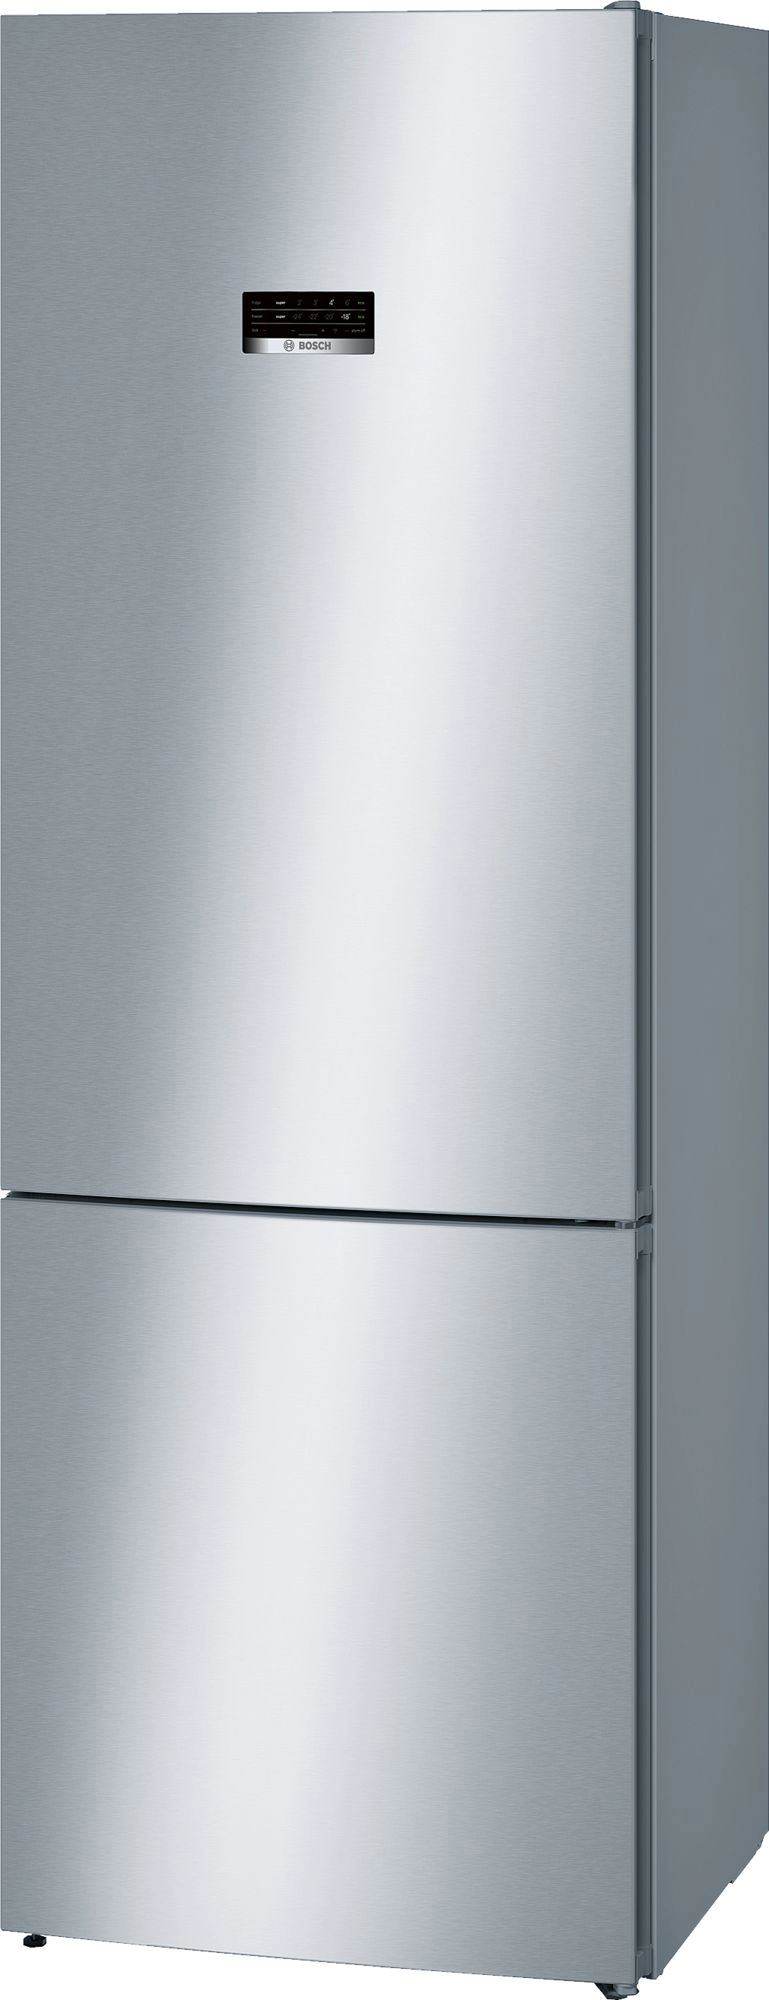 Холодильник с нижней морозильной камерой Bosch KGN49XI30U, 435 л, 203 см, A++, Серебристый